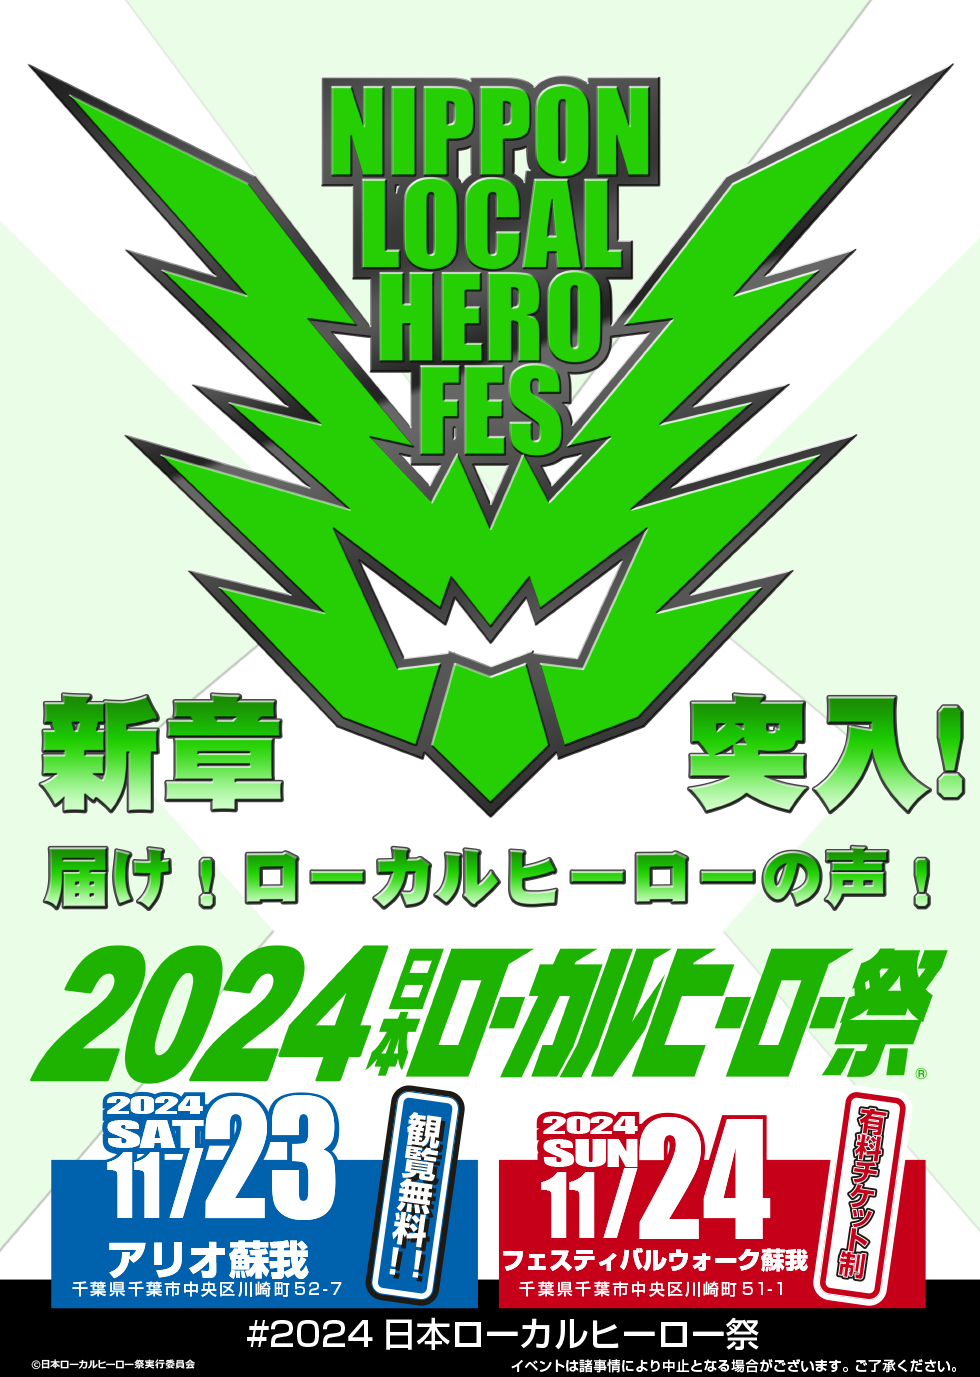 2024日本ローカルヒーロー祭